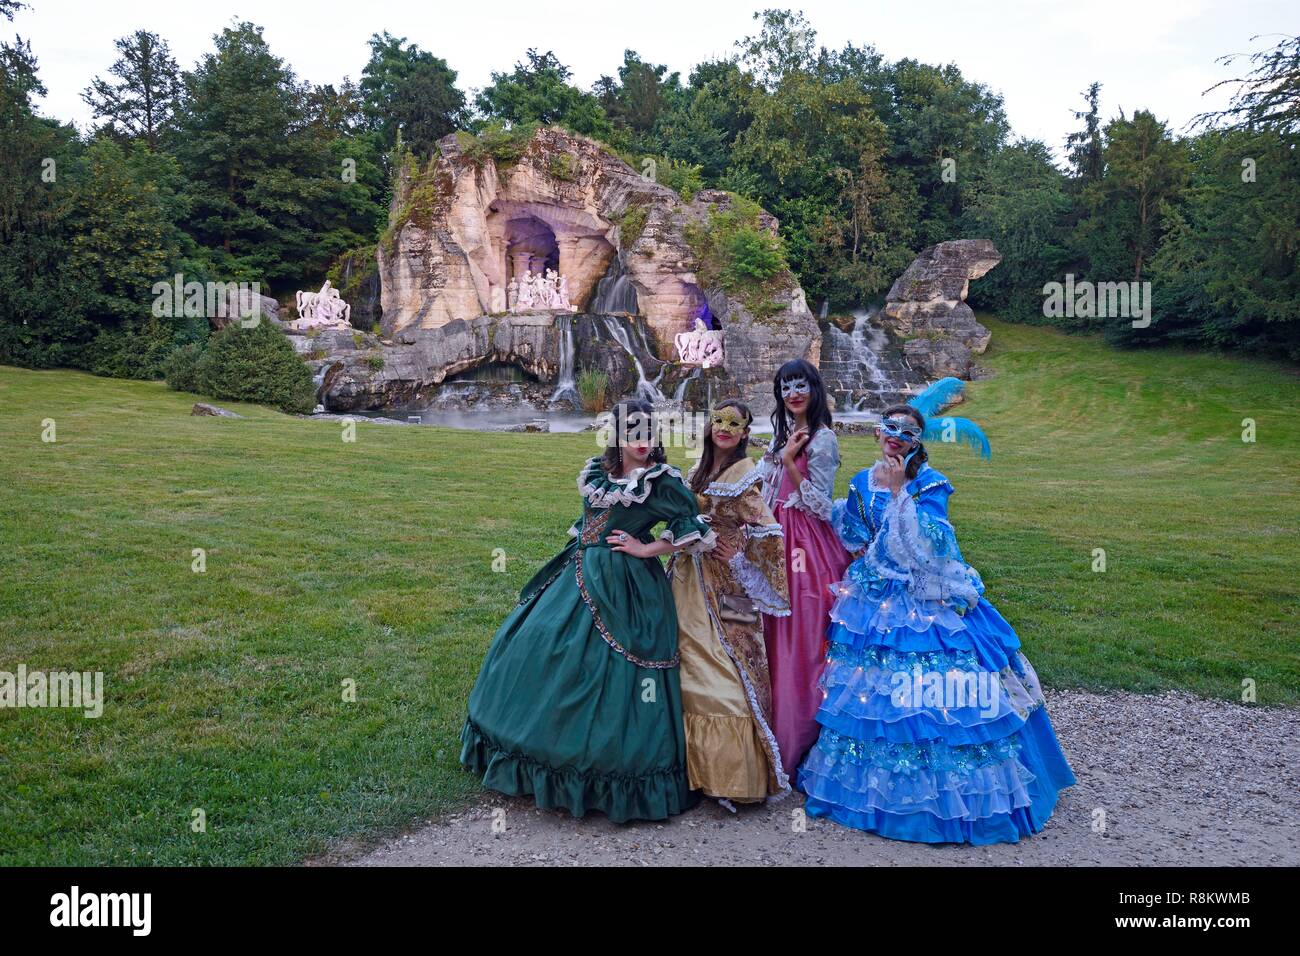 France, Yvelines, Versailles, jardins de Versailles Palace classé Patrimoine Mondial par l'UNESCO, le bosquet des bains d'Apollon pendant le bal masqué Banque D'Images